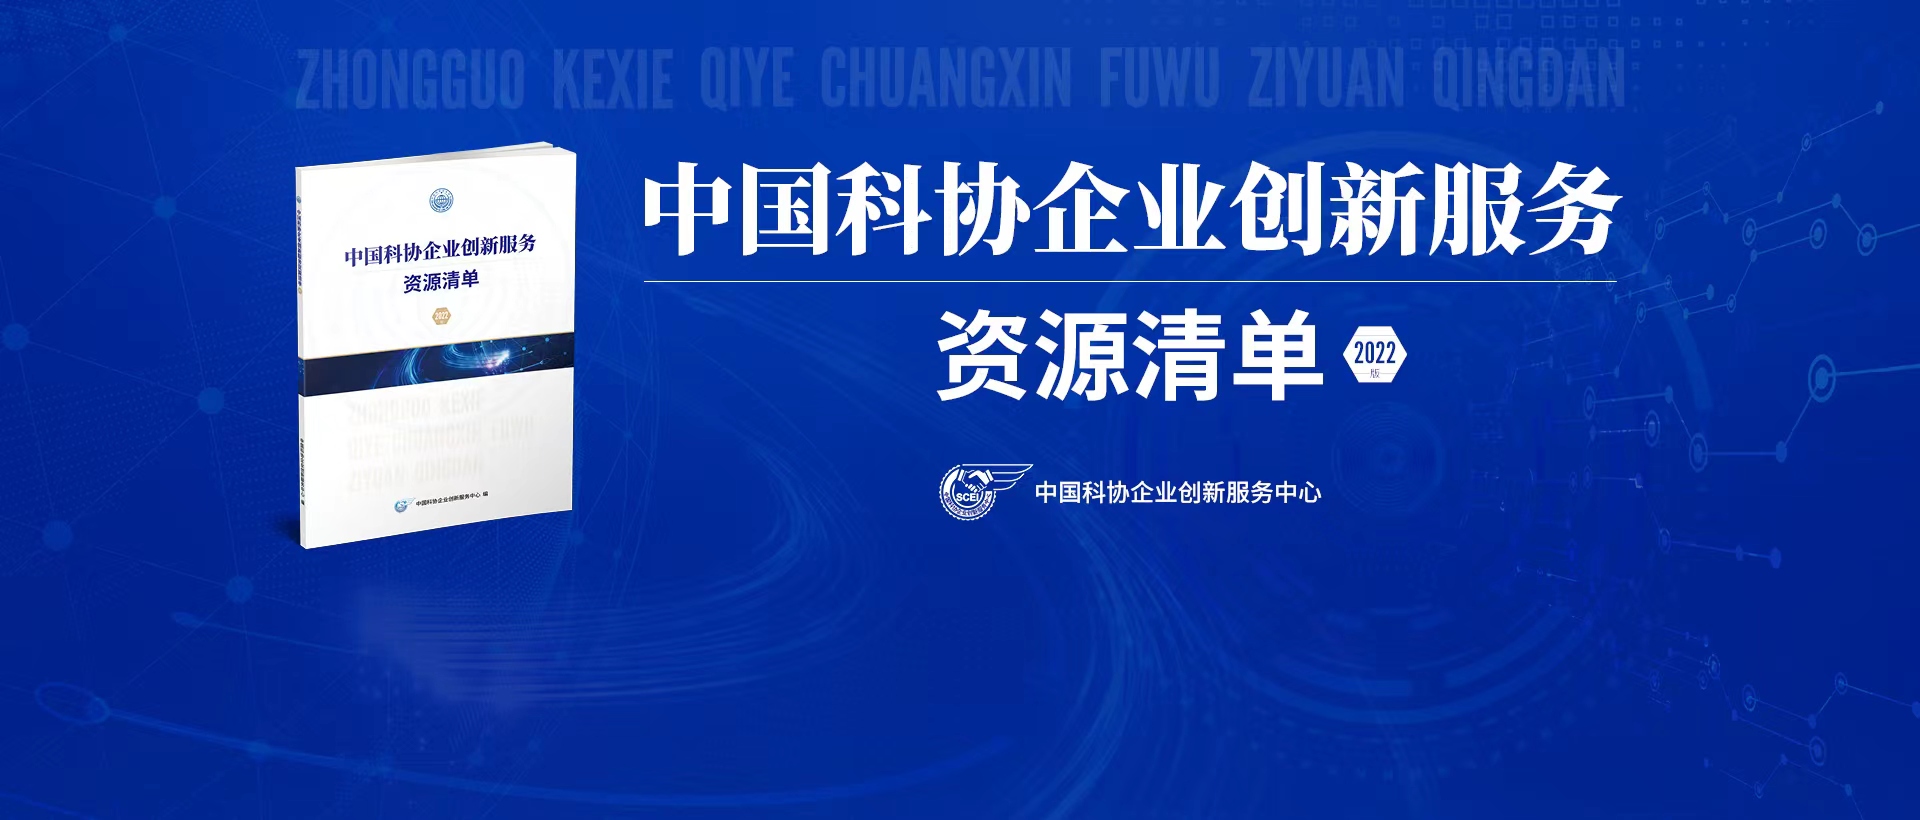 中国科协企业创新服务资源清单